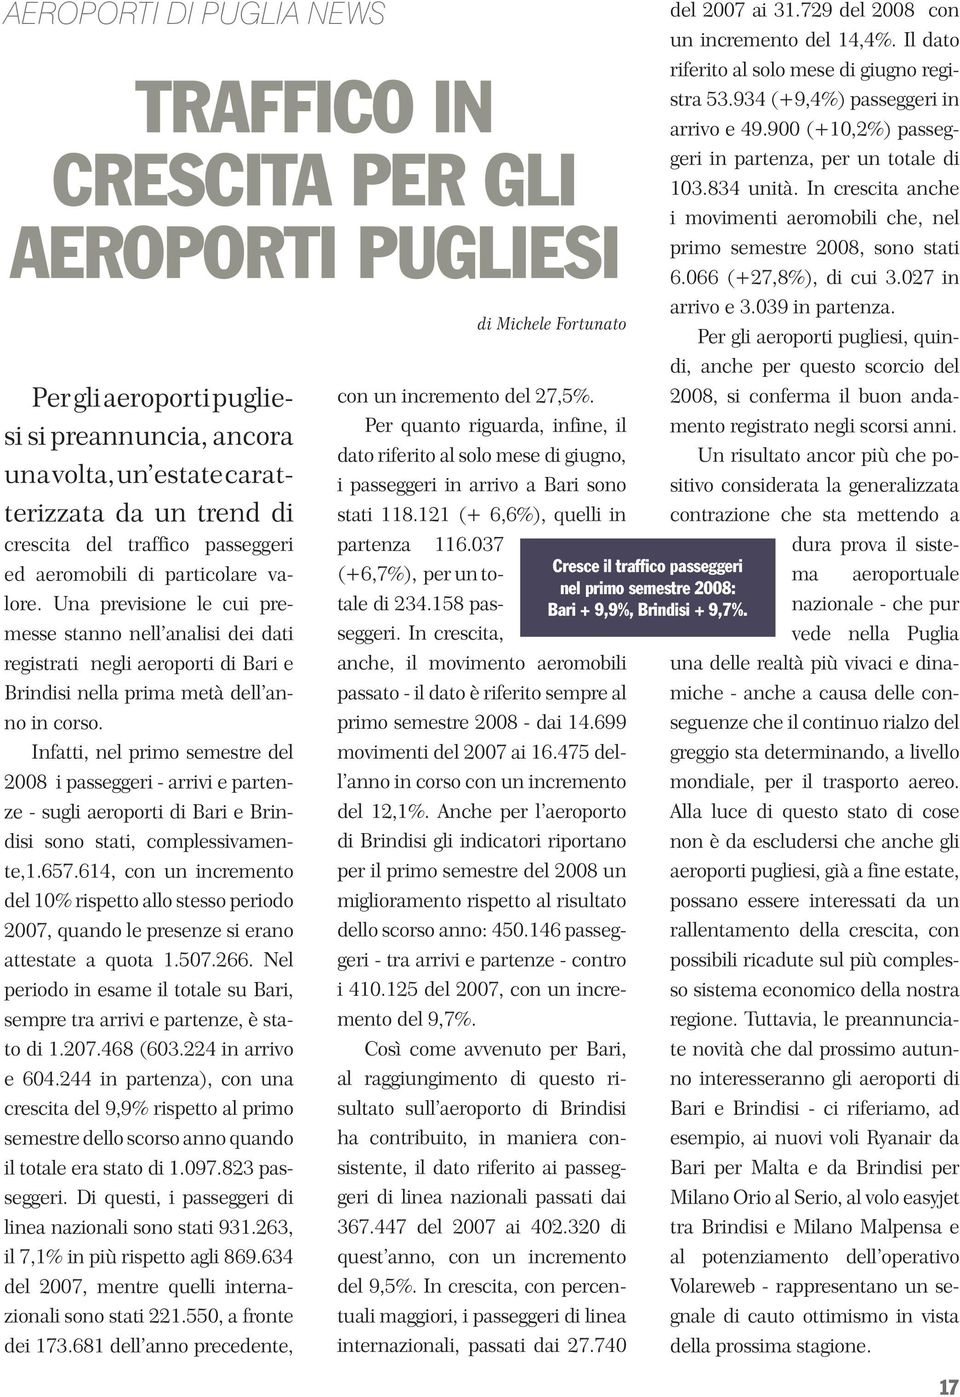 Infatti, nel primo semestre del 2008 i passeggeri - arrivi e partenze - sugli aeroporti di Bari e Brindisi sono stati, complessivamente,1.657.